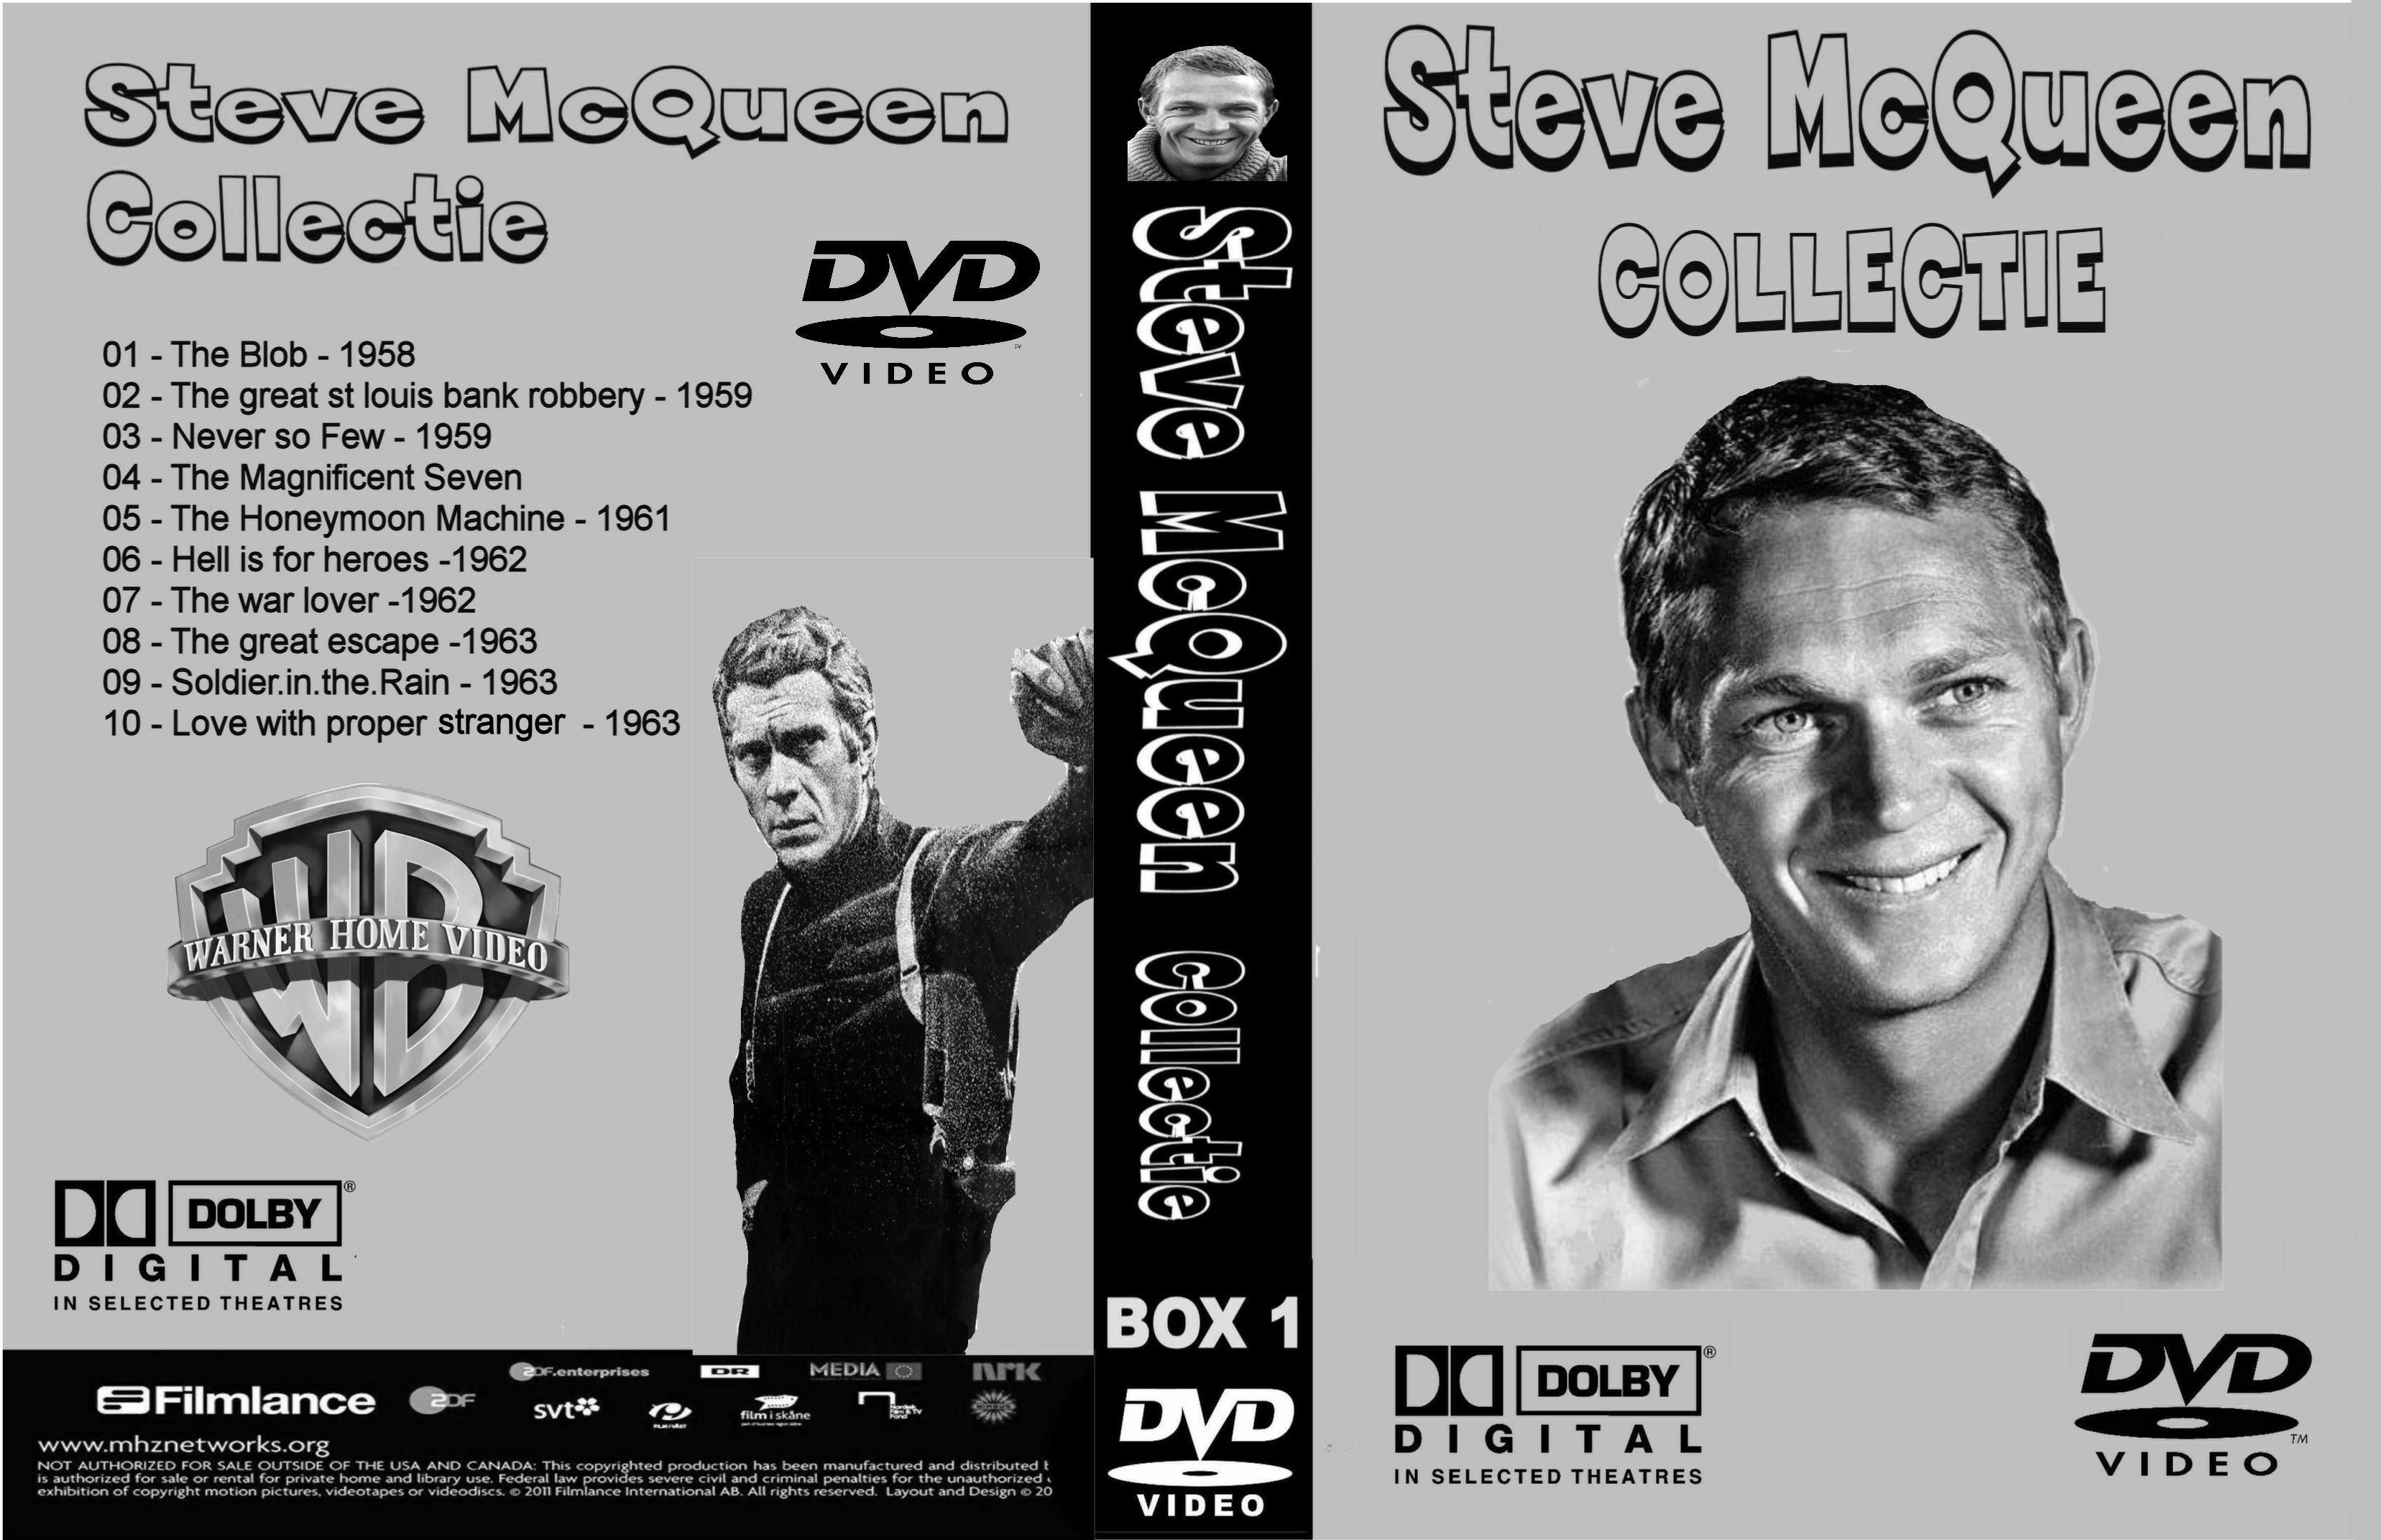 Steve McQueen Collectiie Box 1 DvD 10 van 10